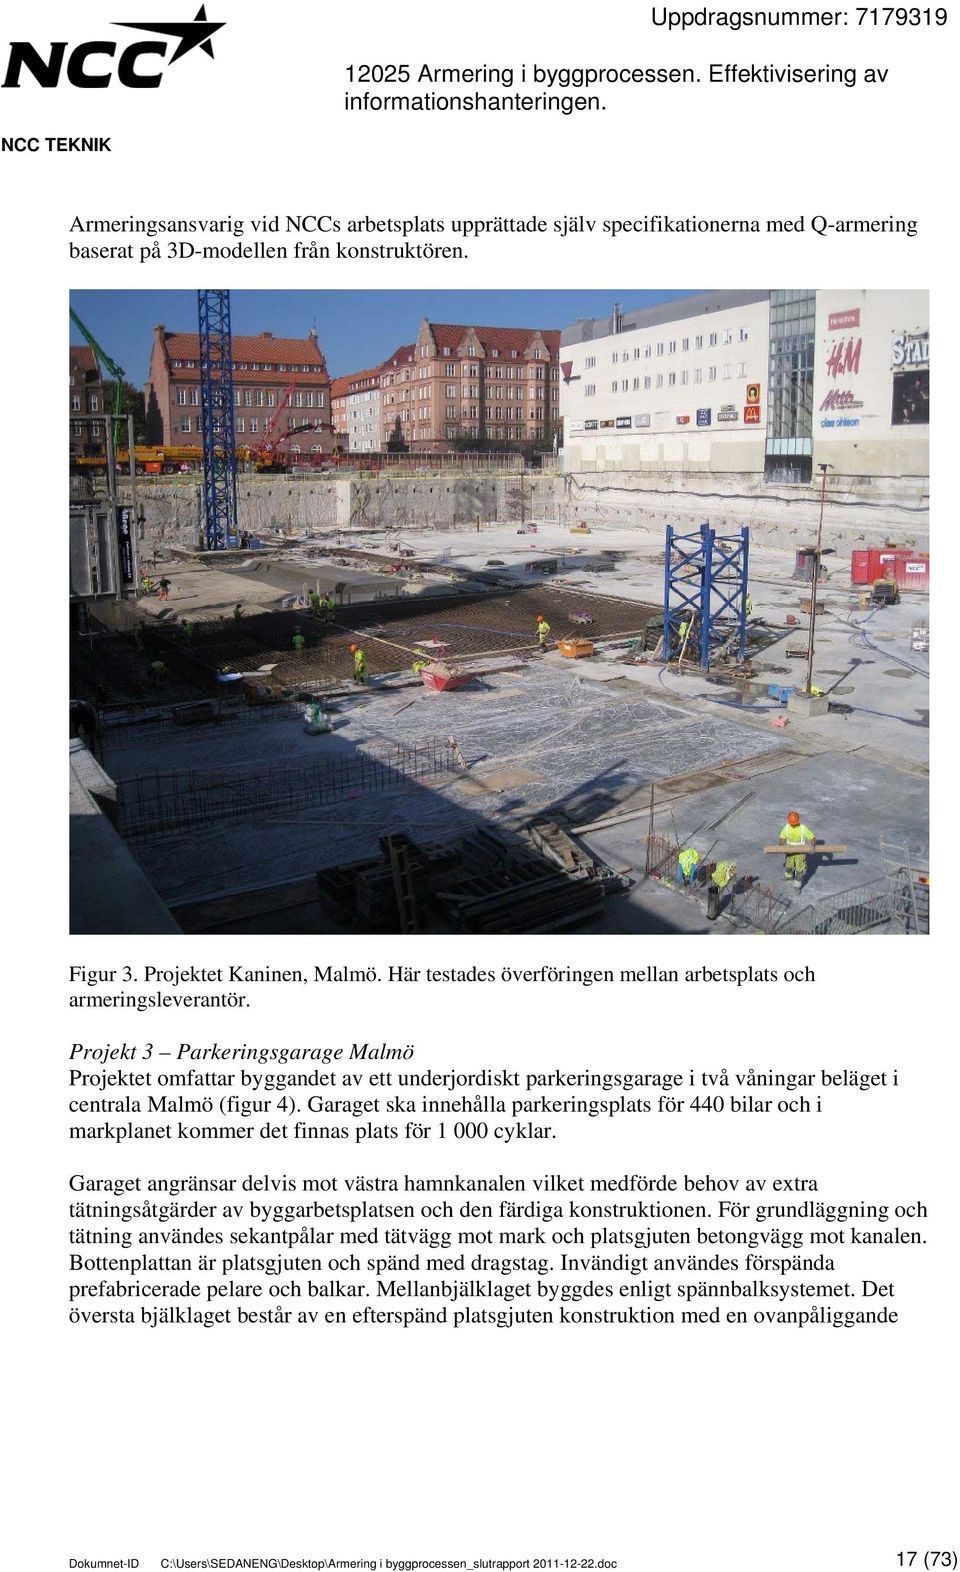 Projekt 3 Parkeringsgarage Malmö Projektet omfattar byggandet av ett underjordiskt parkeringsgarage i två våningar beläget i centrala Malmö (figur 4).